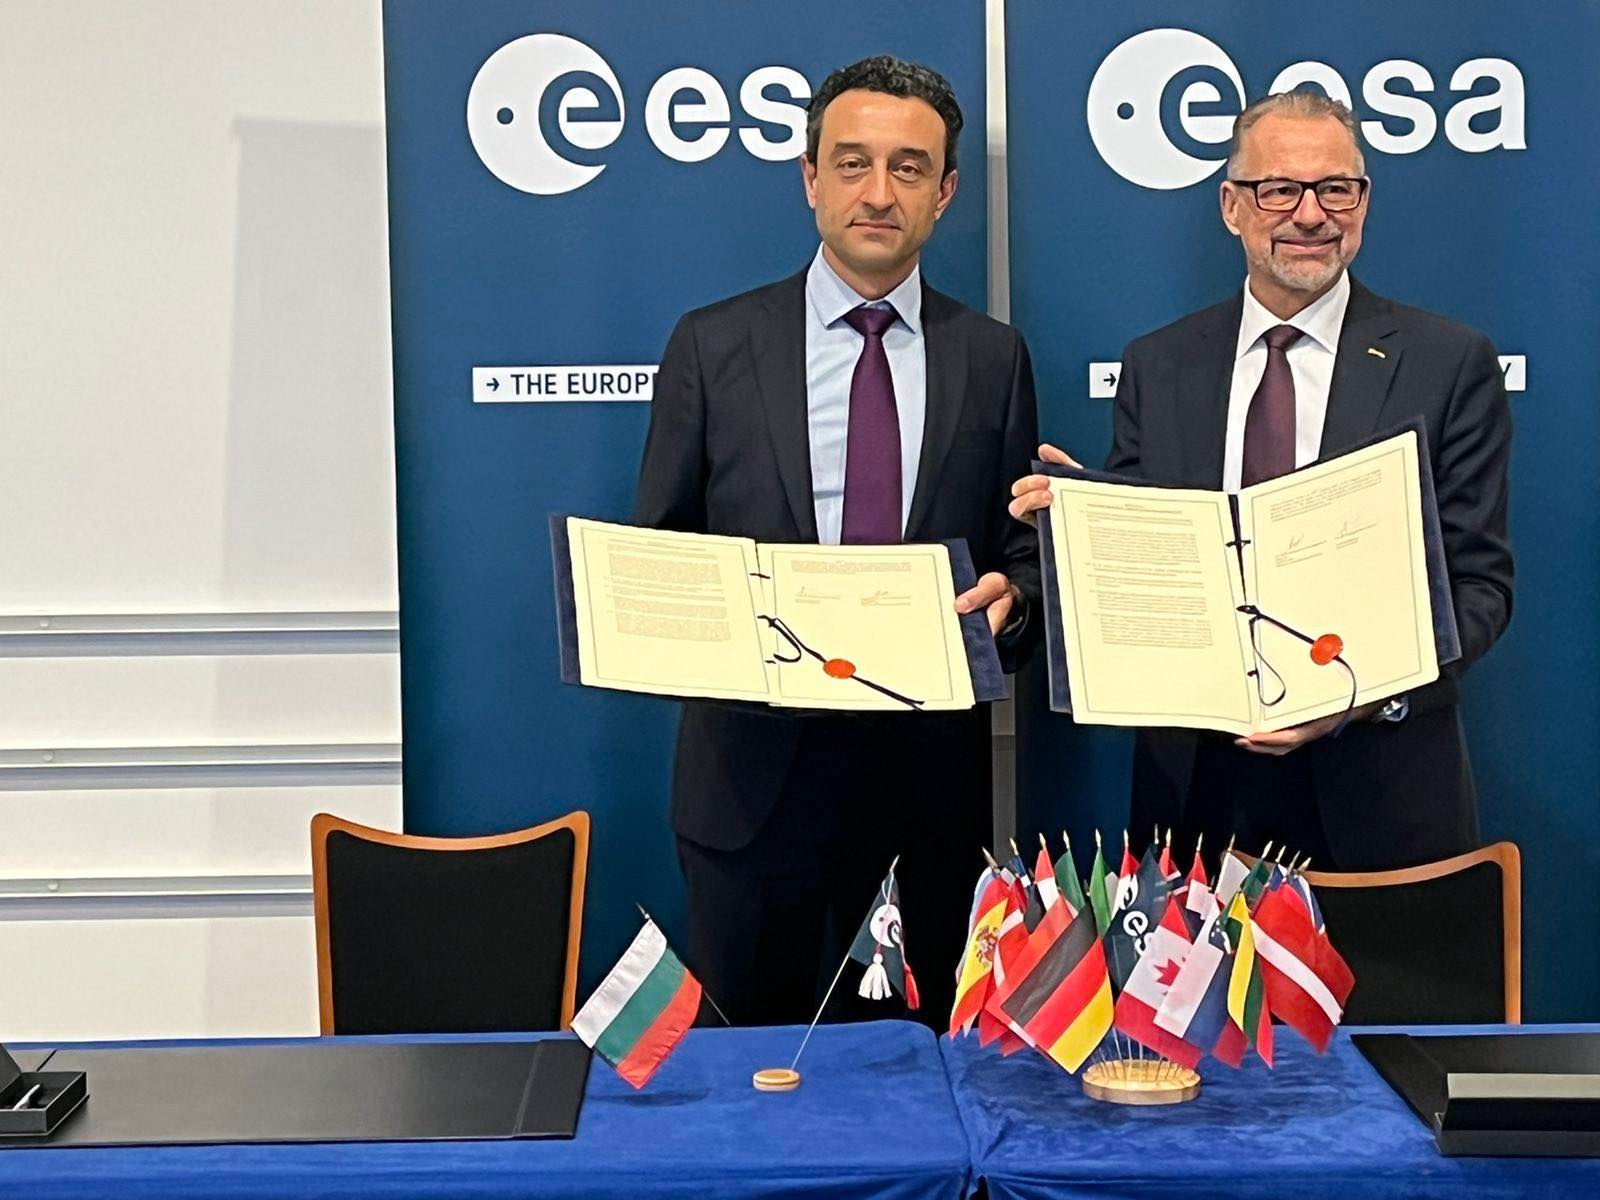 Български фирми ще могат да участват в европейски проекти с космическо приложение